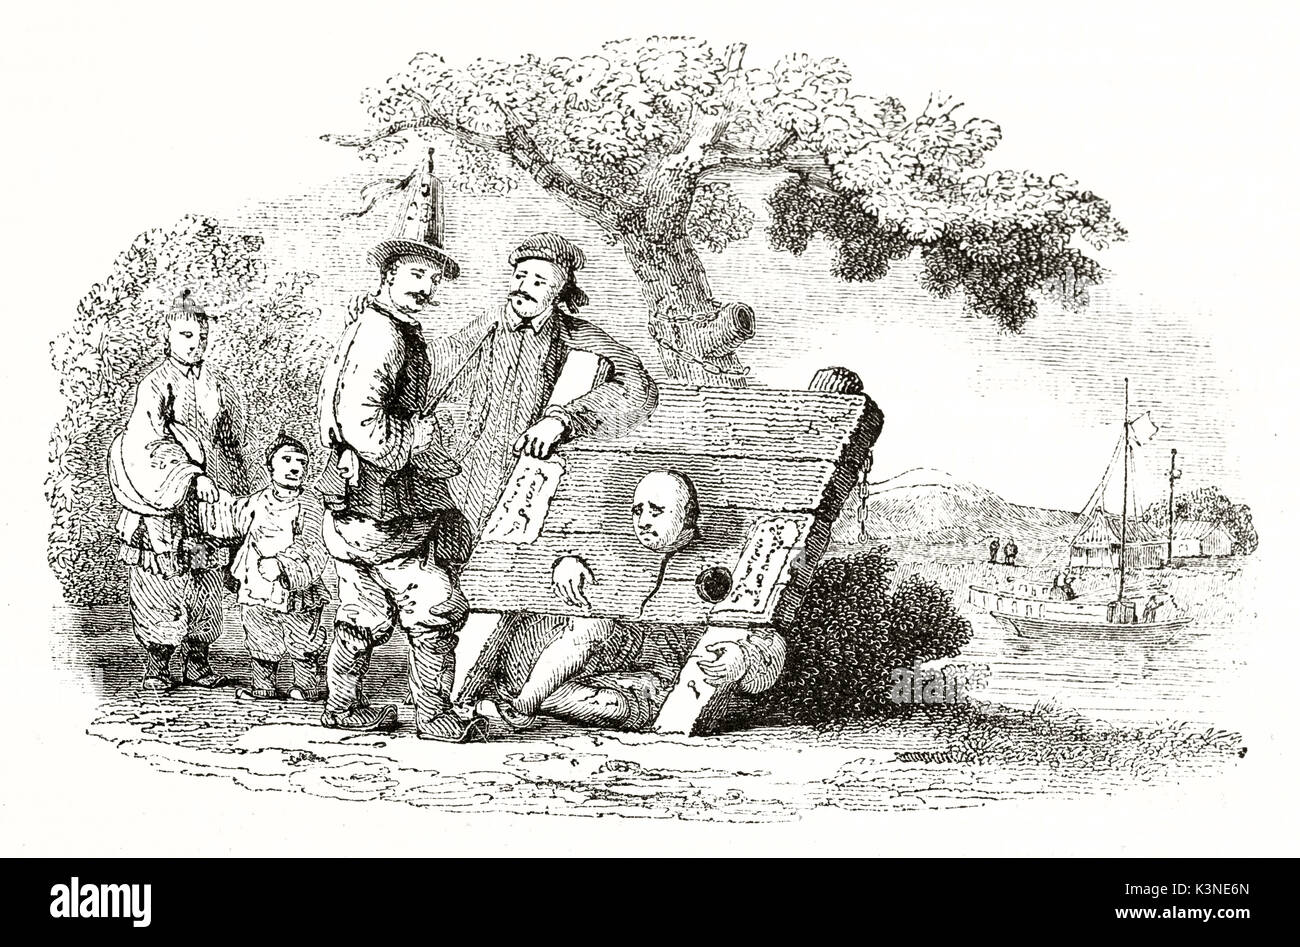 Ilustración de un viejo hombre que sufría el cepo chino bajo el punto de vista de otras personas, al aire libre. Autor publicado no identificados en el Magasin pintoresco París 1839 Foto de stock